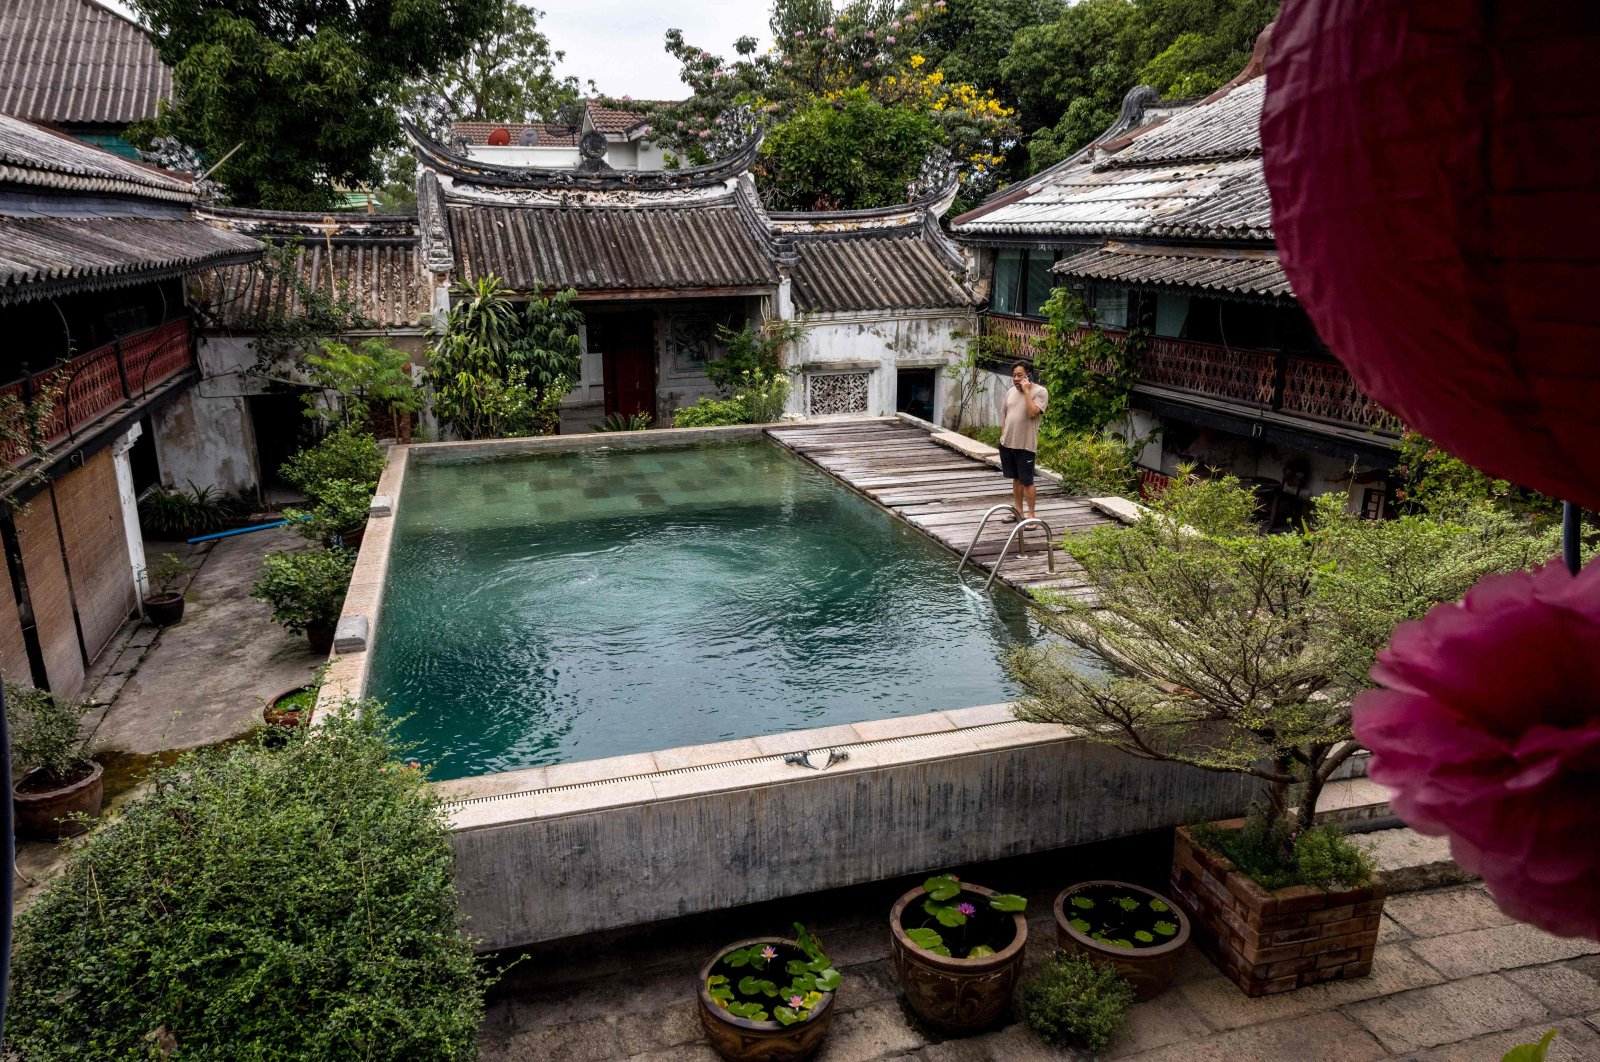 Rumah Cina bersejarah di Bangkok bertahan sebagai sekolah selam